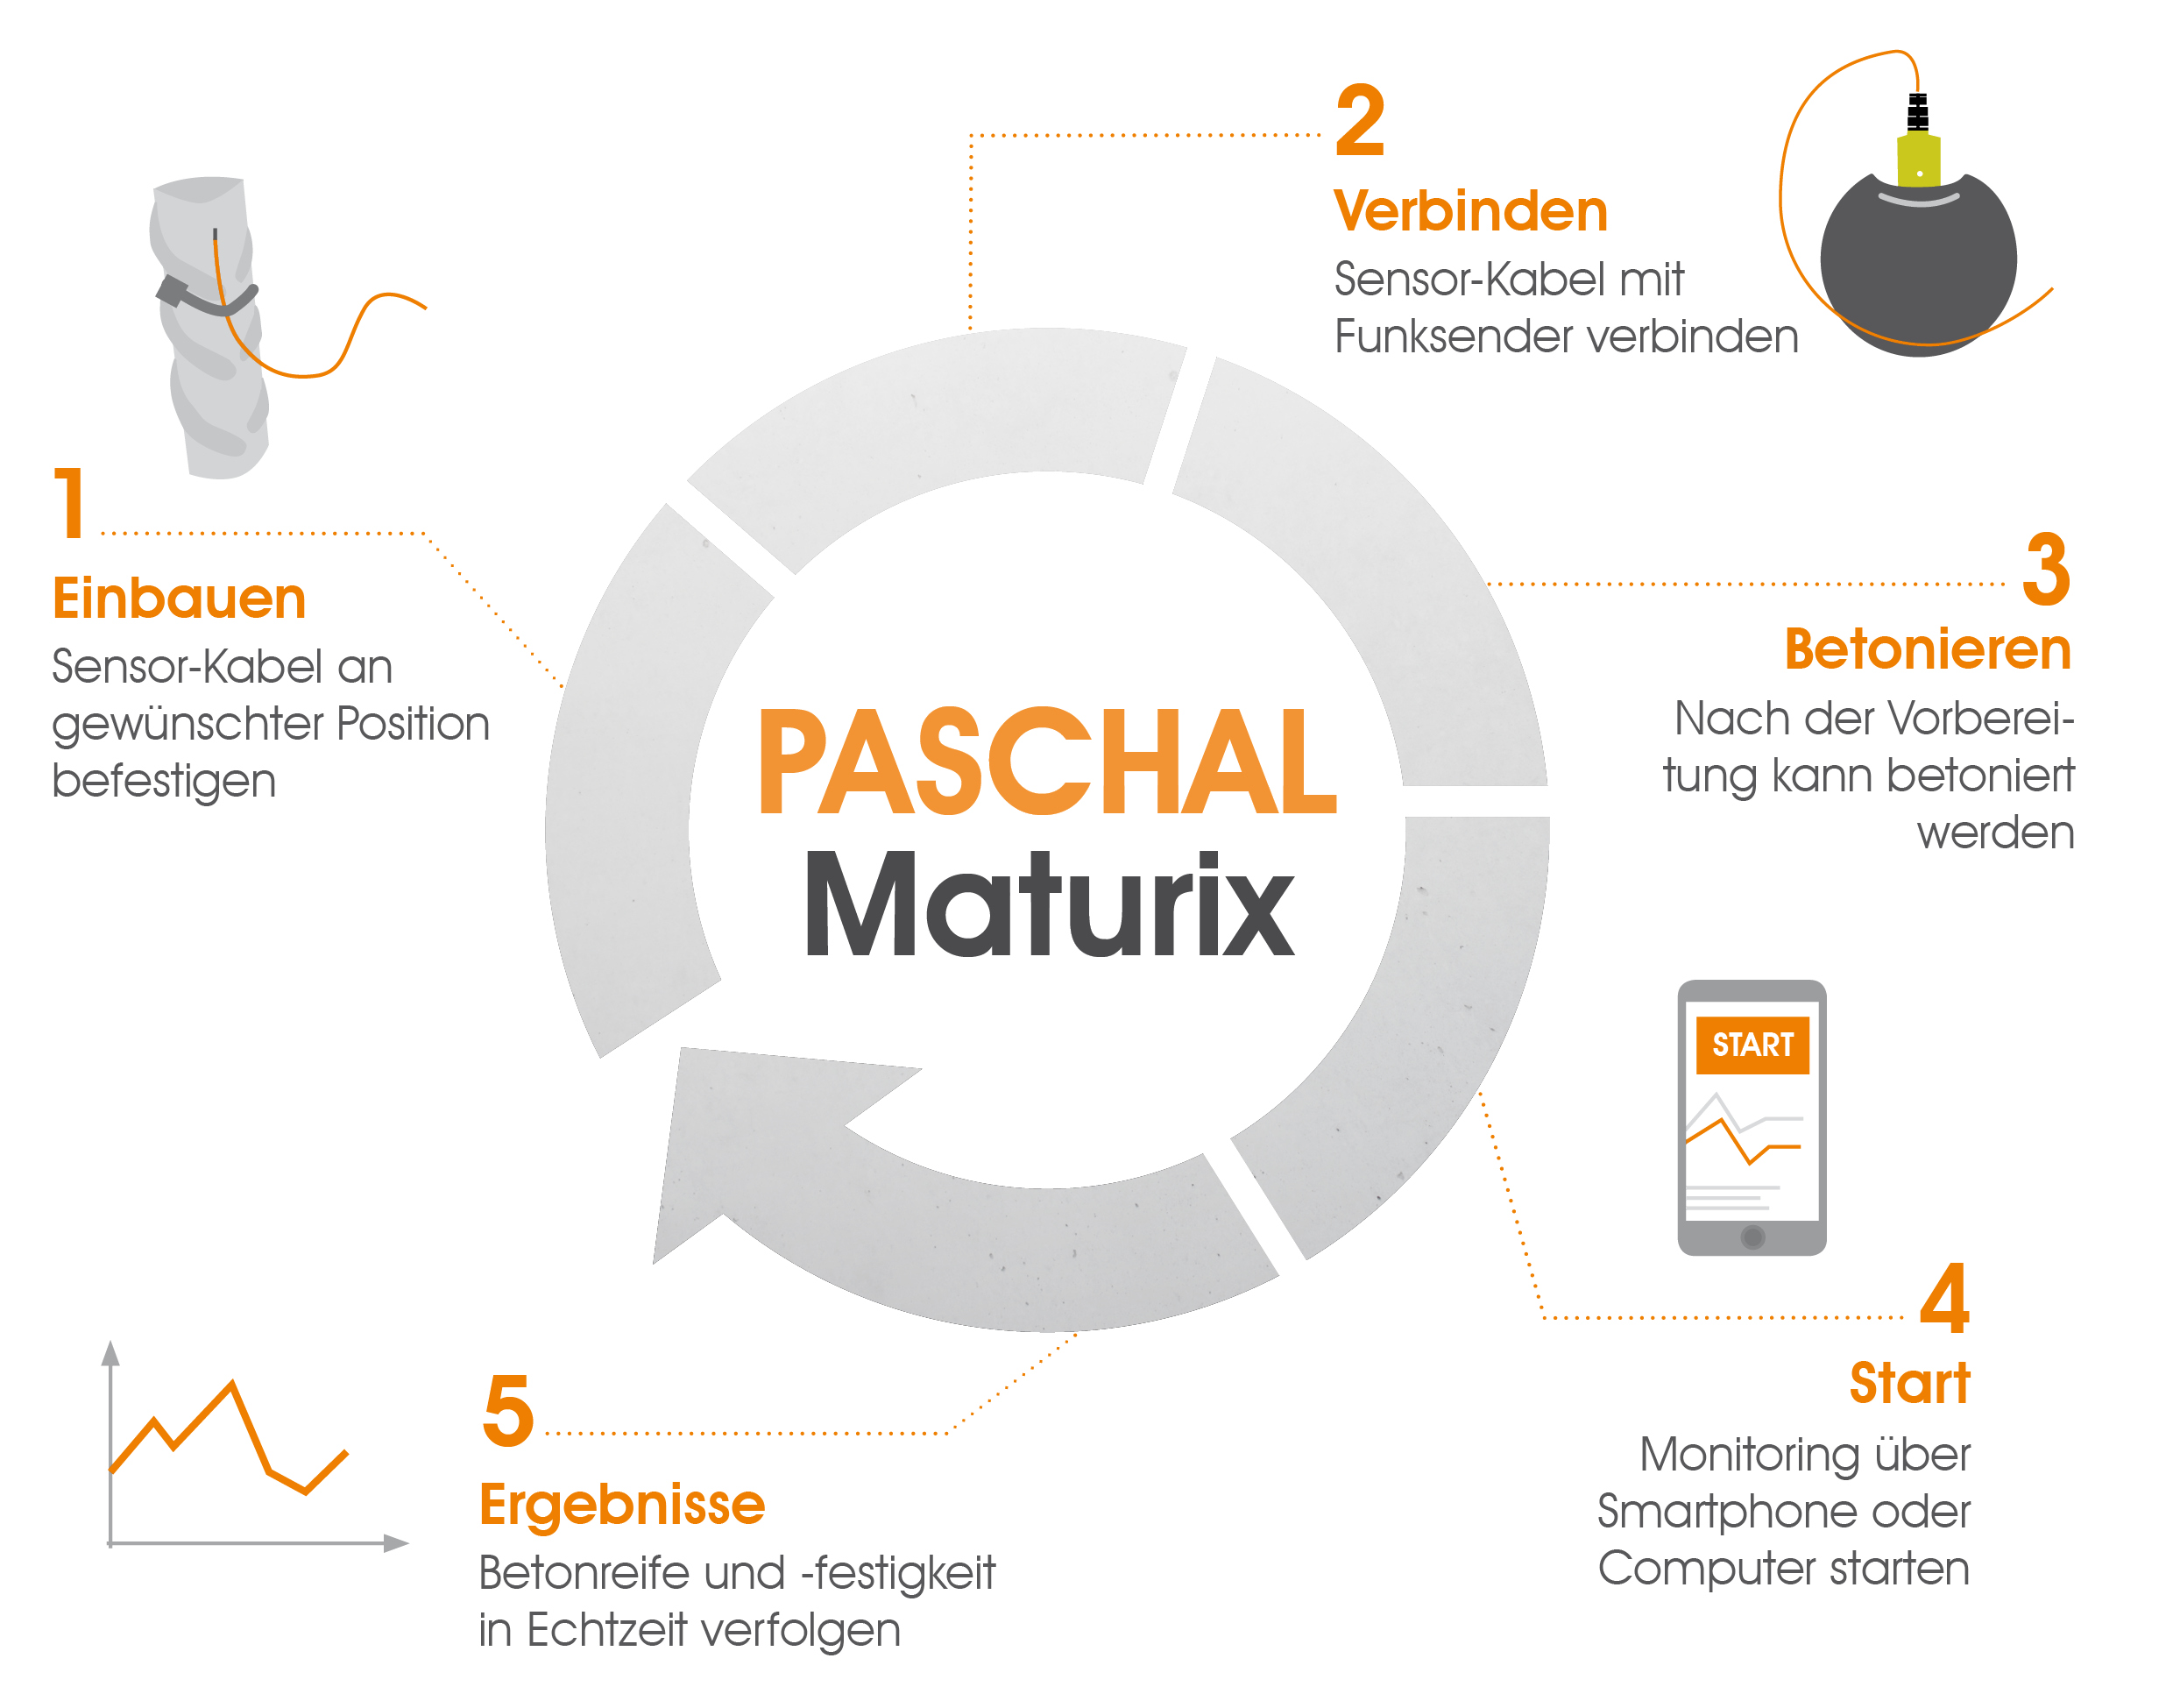 Funktionsweise PASCHAL Maturix